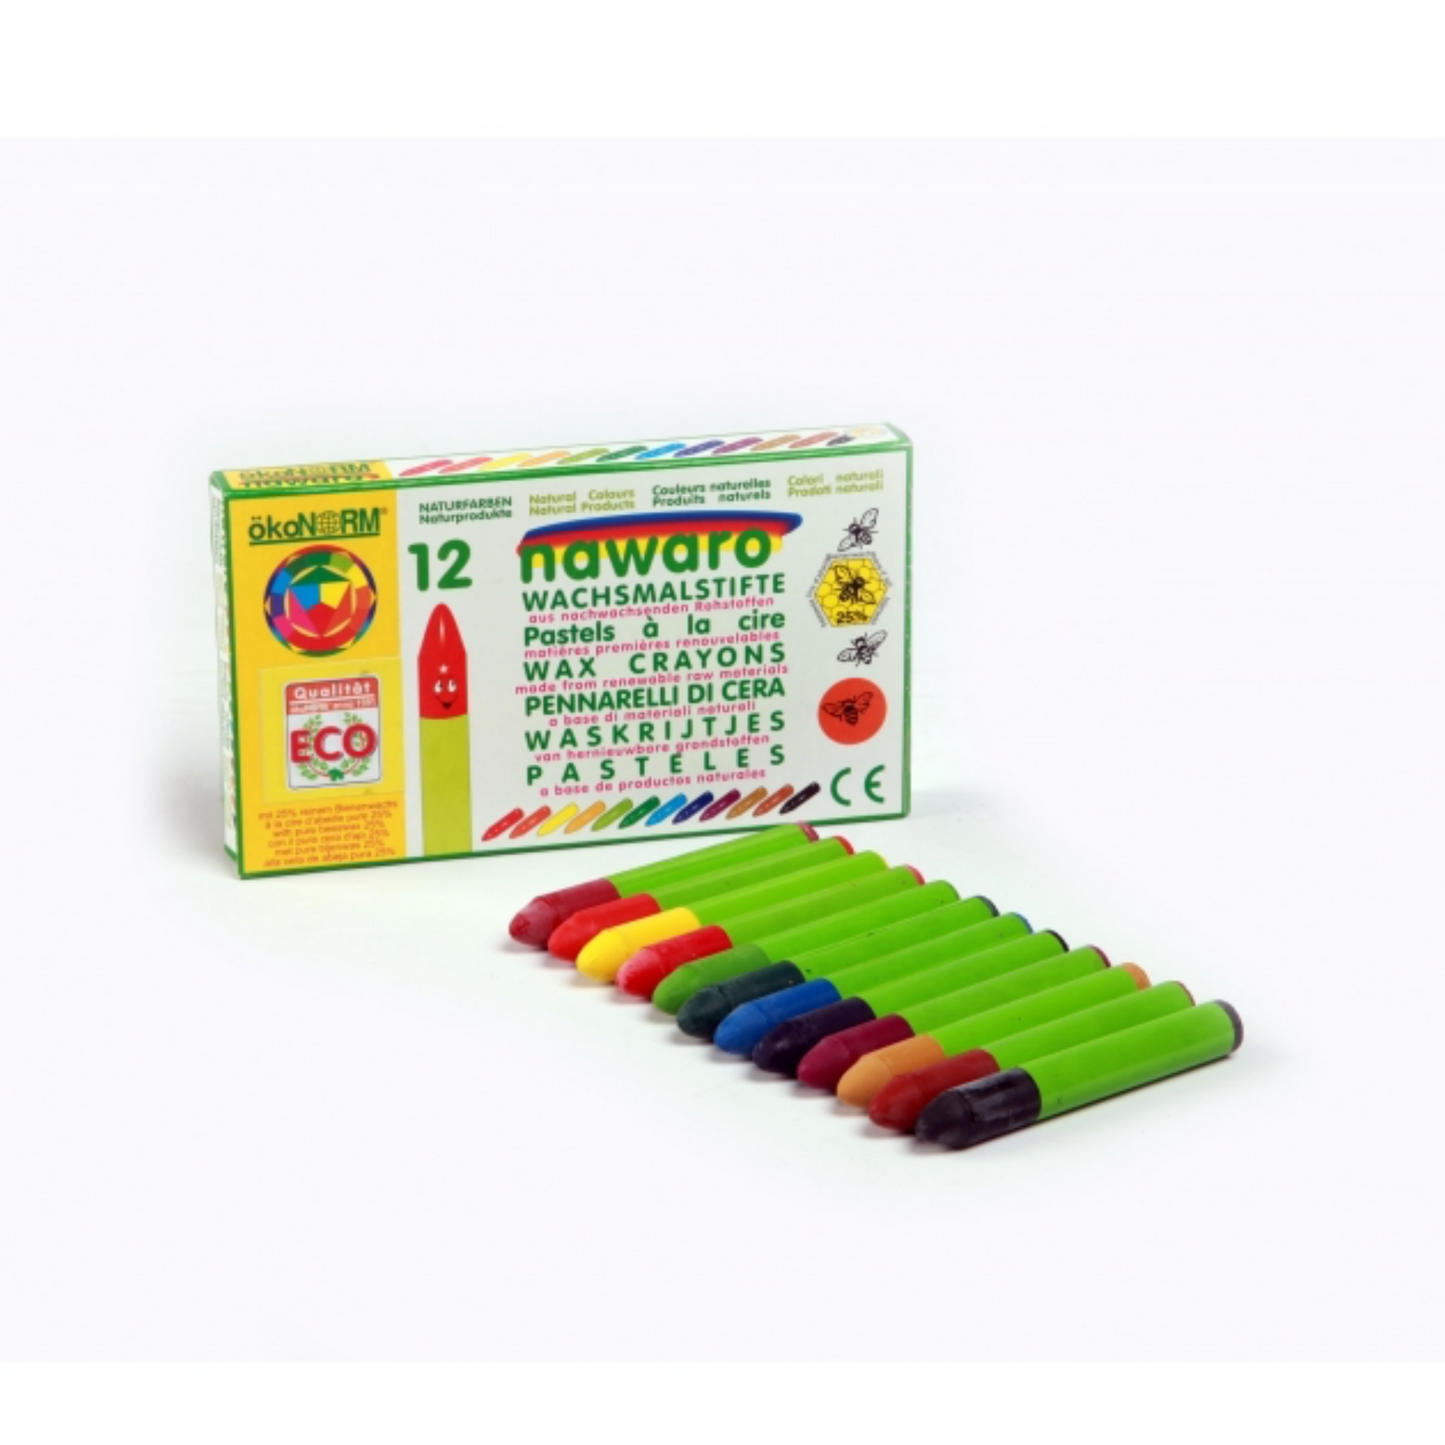 Beeswax Crayons – Woodford Cedar Run Wildlife Refuge